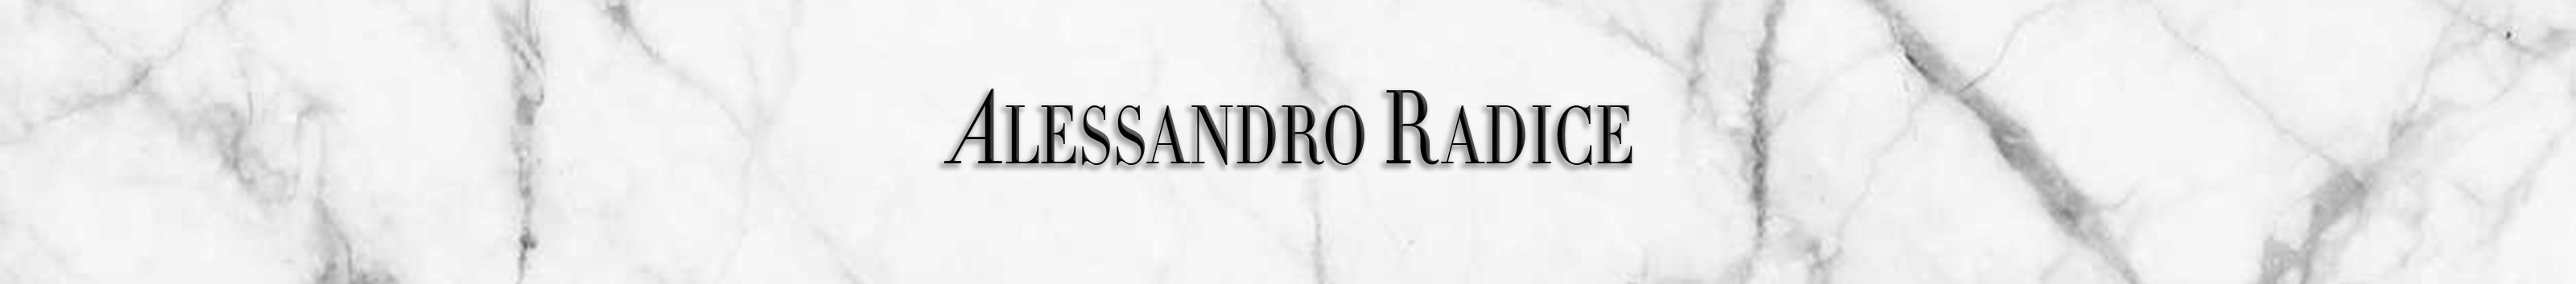 Баннер профиля Alessandro Radice